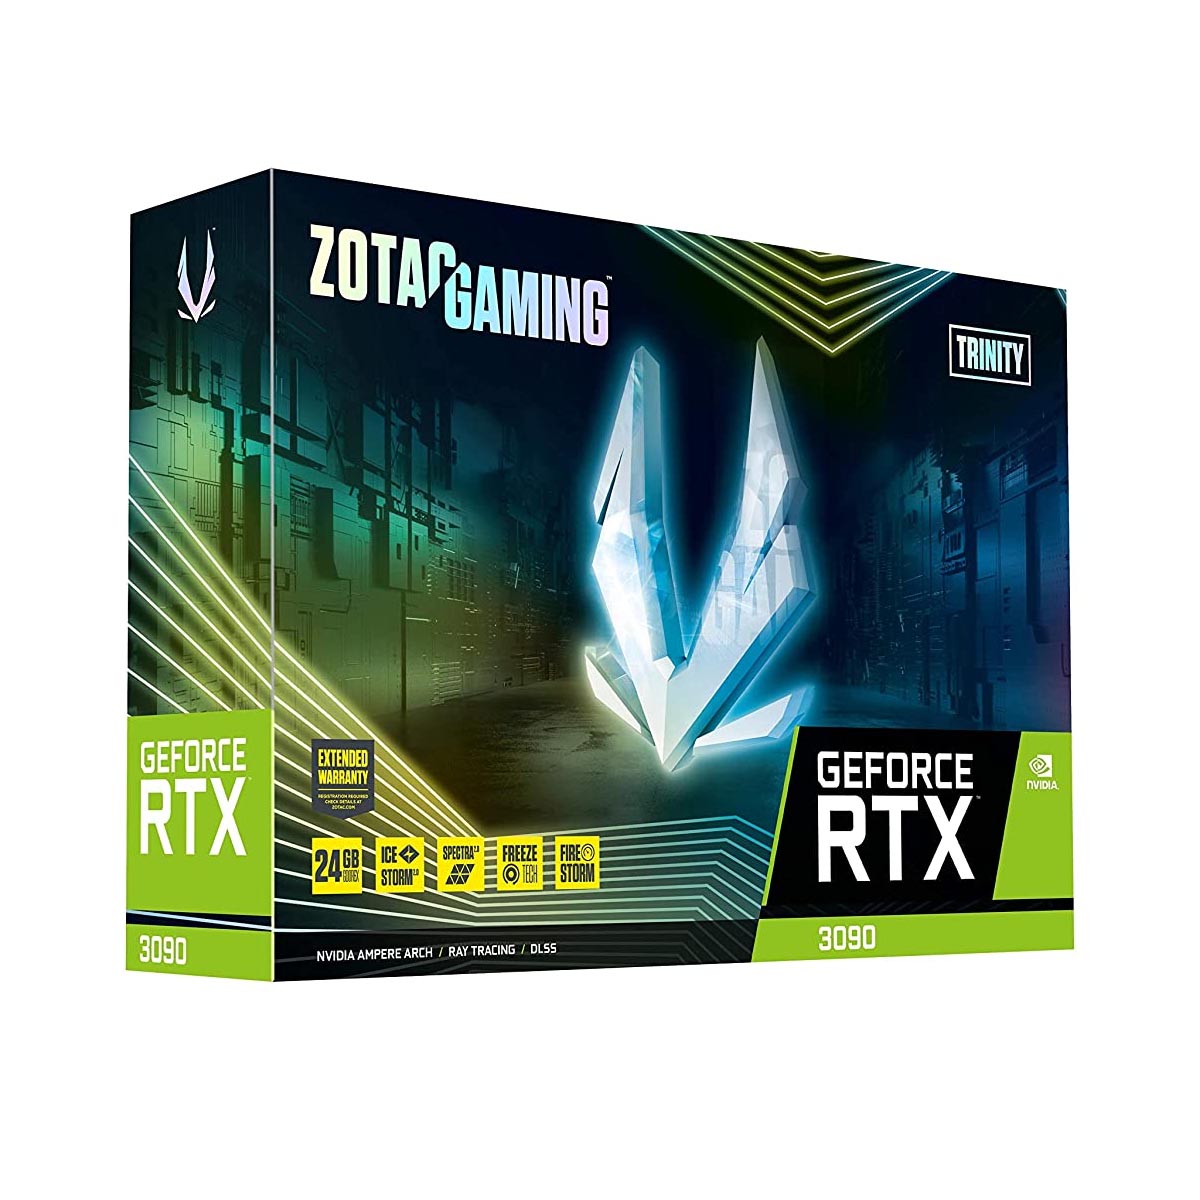 Zotac गेमिंग GeForce RTX 3090 ट्रिनिटी 24GB GDDR6X 384-बिट ग्राफ़िक्स कार्ड